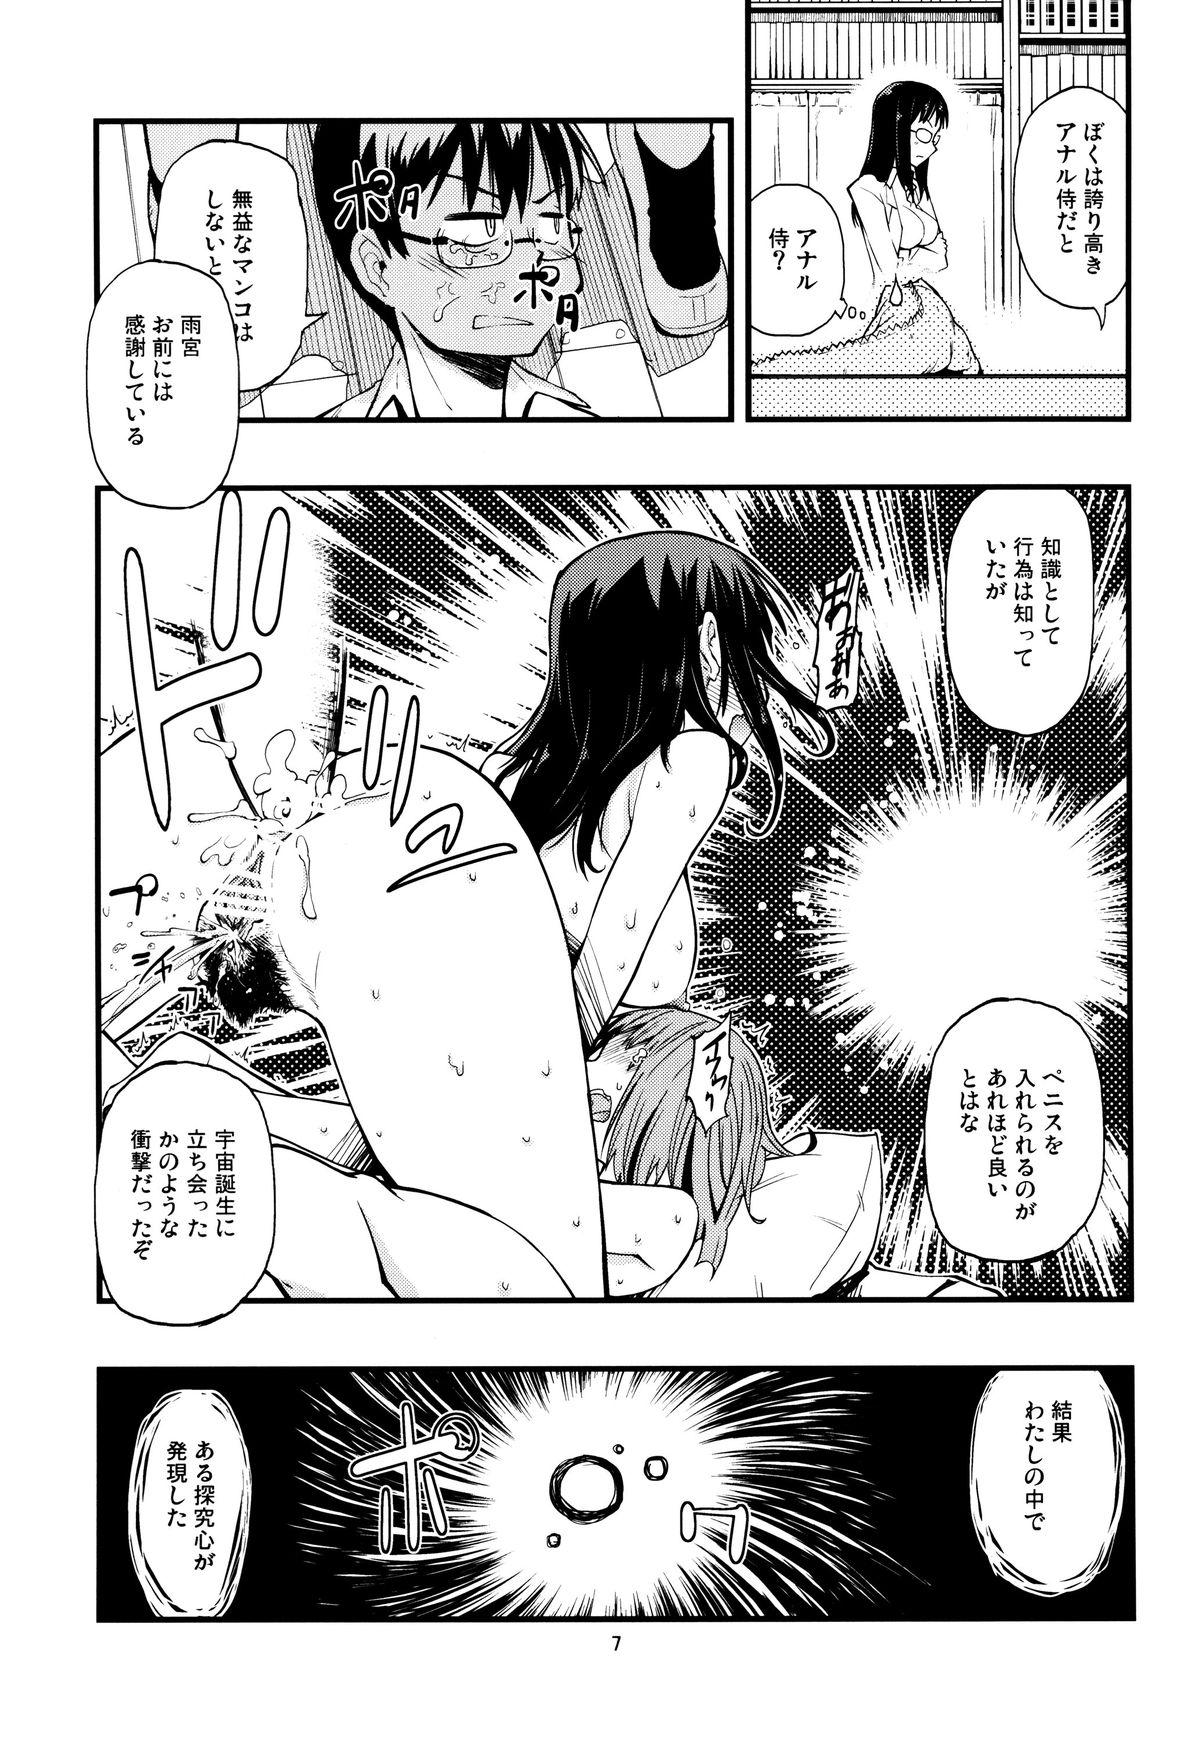 Ride Hisame Hon - Hoshi no samidare Nasty Porn - Page 6